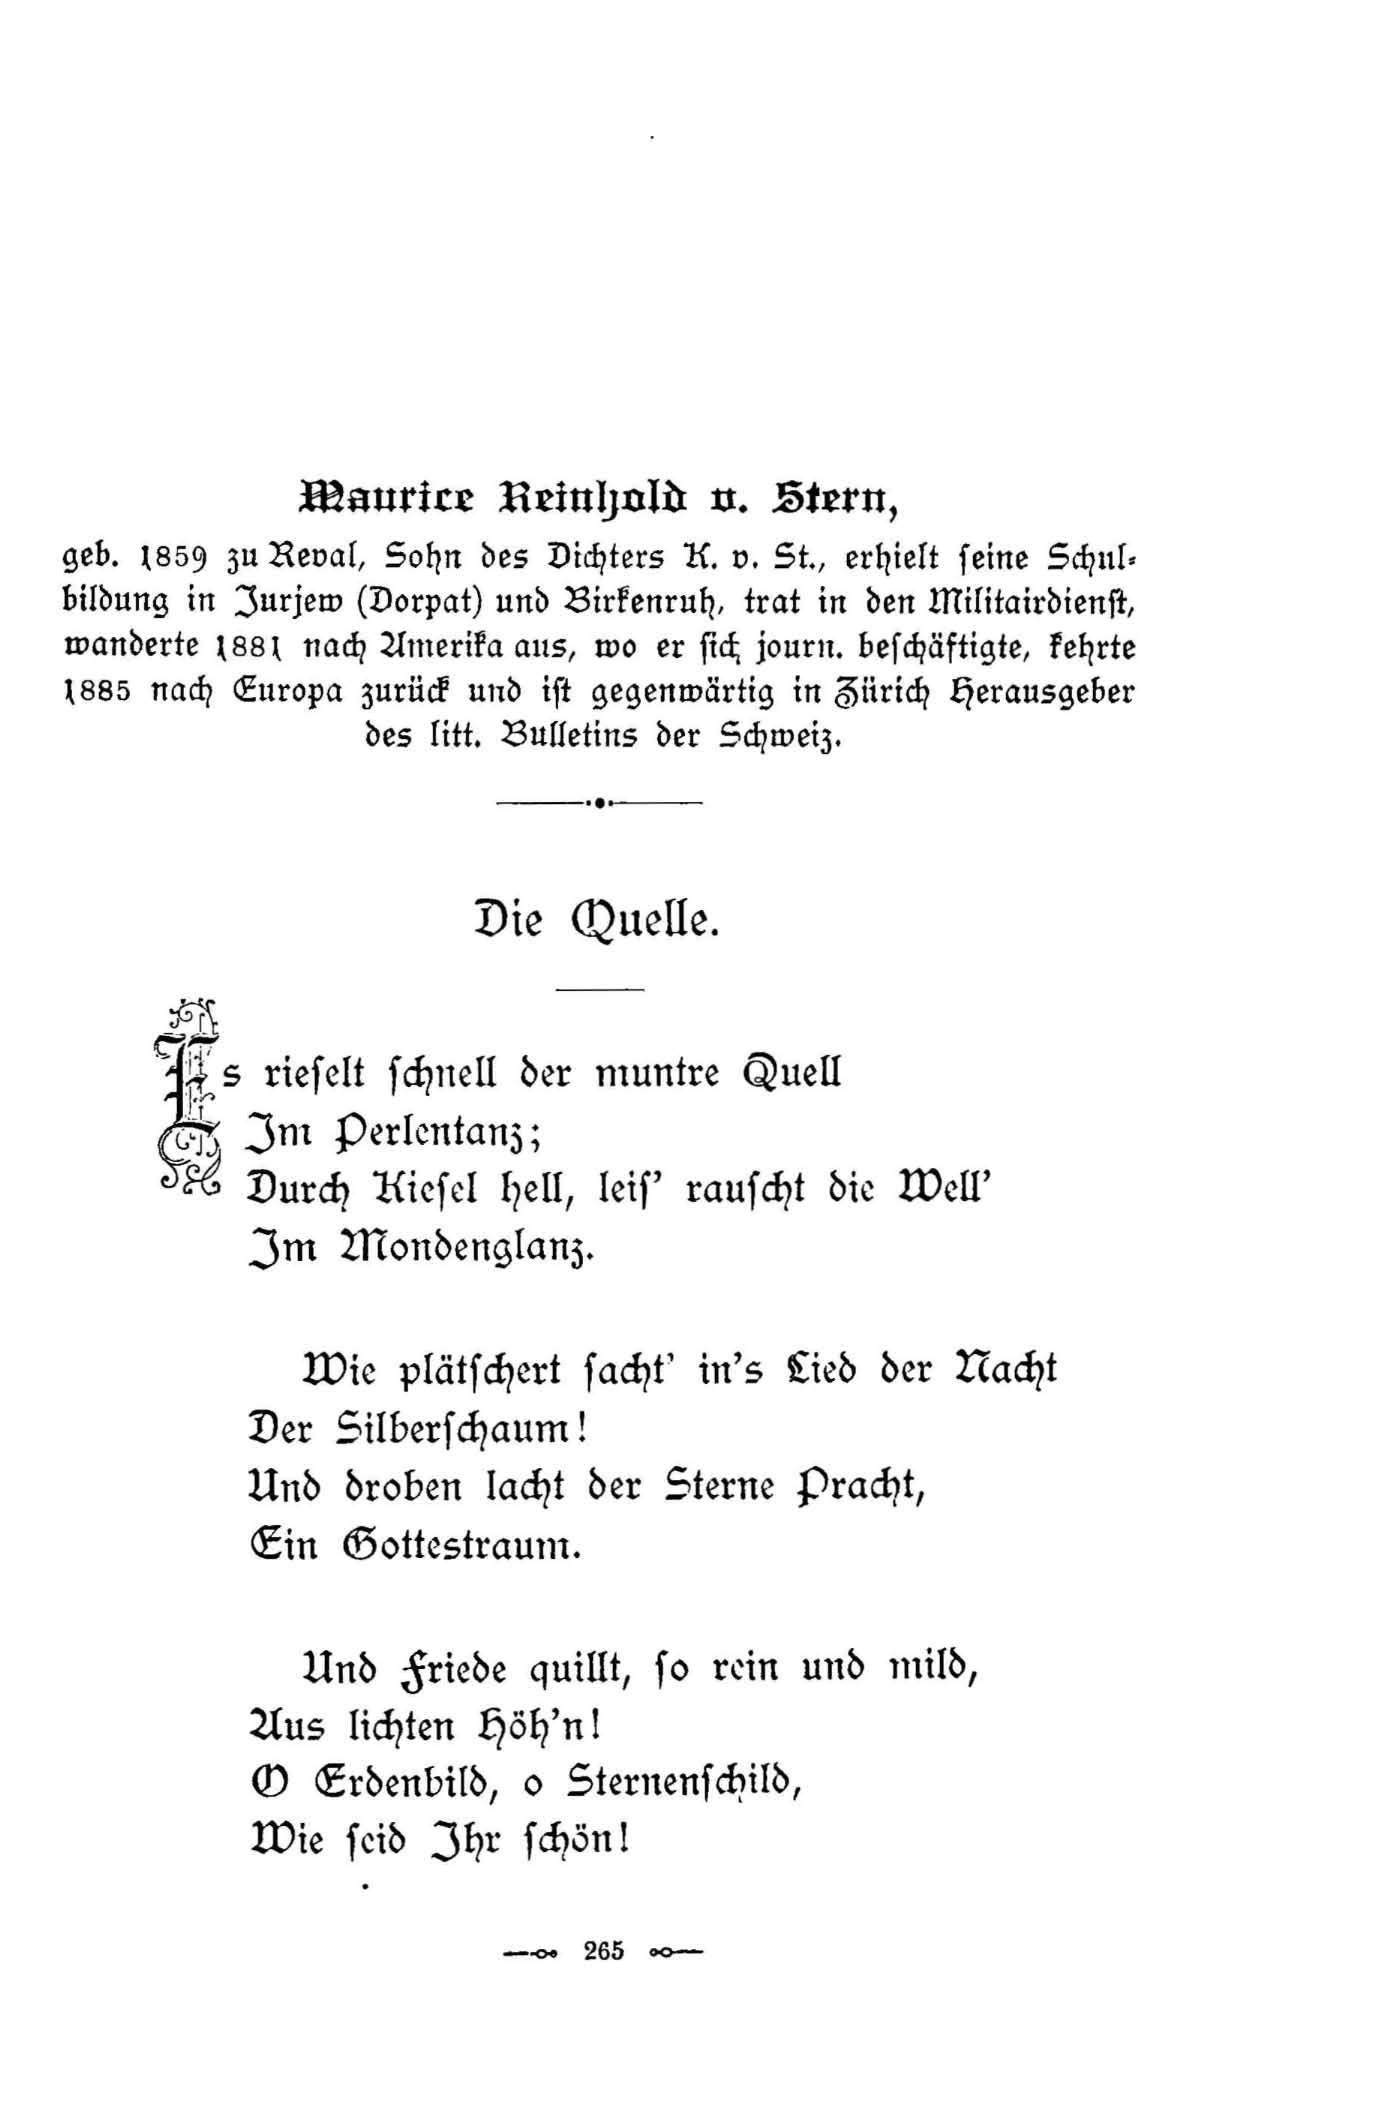 Die Quelle (1896) | 1. (265) Main body of text